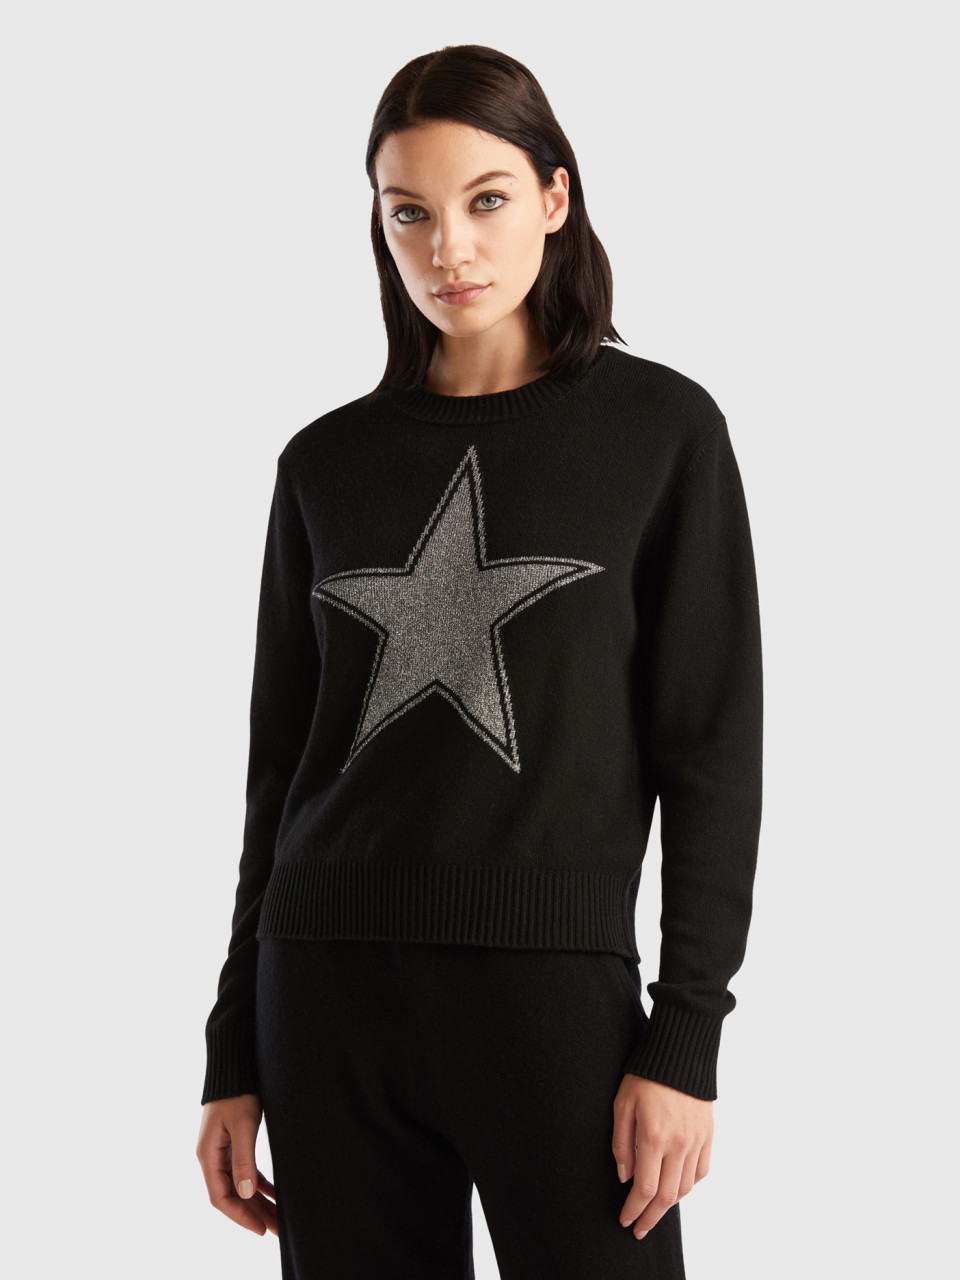 Benetton, Sweater With Lurex Star, Black, Women